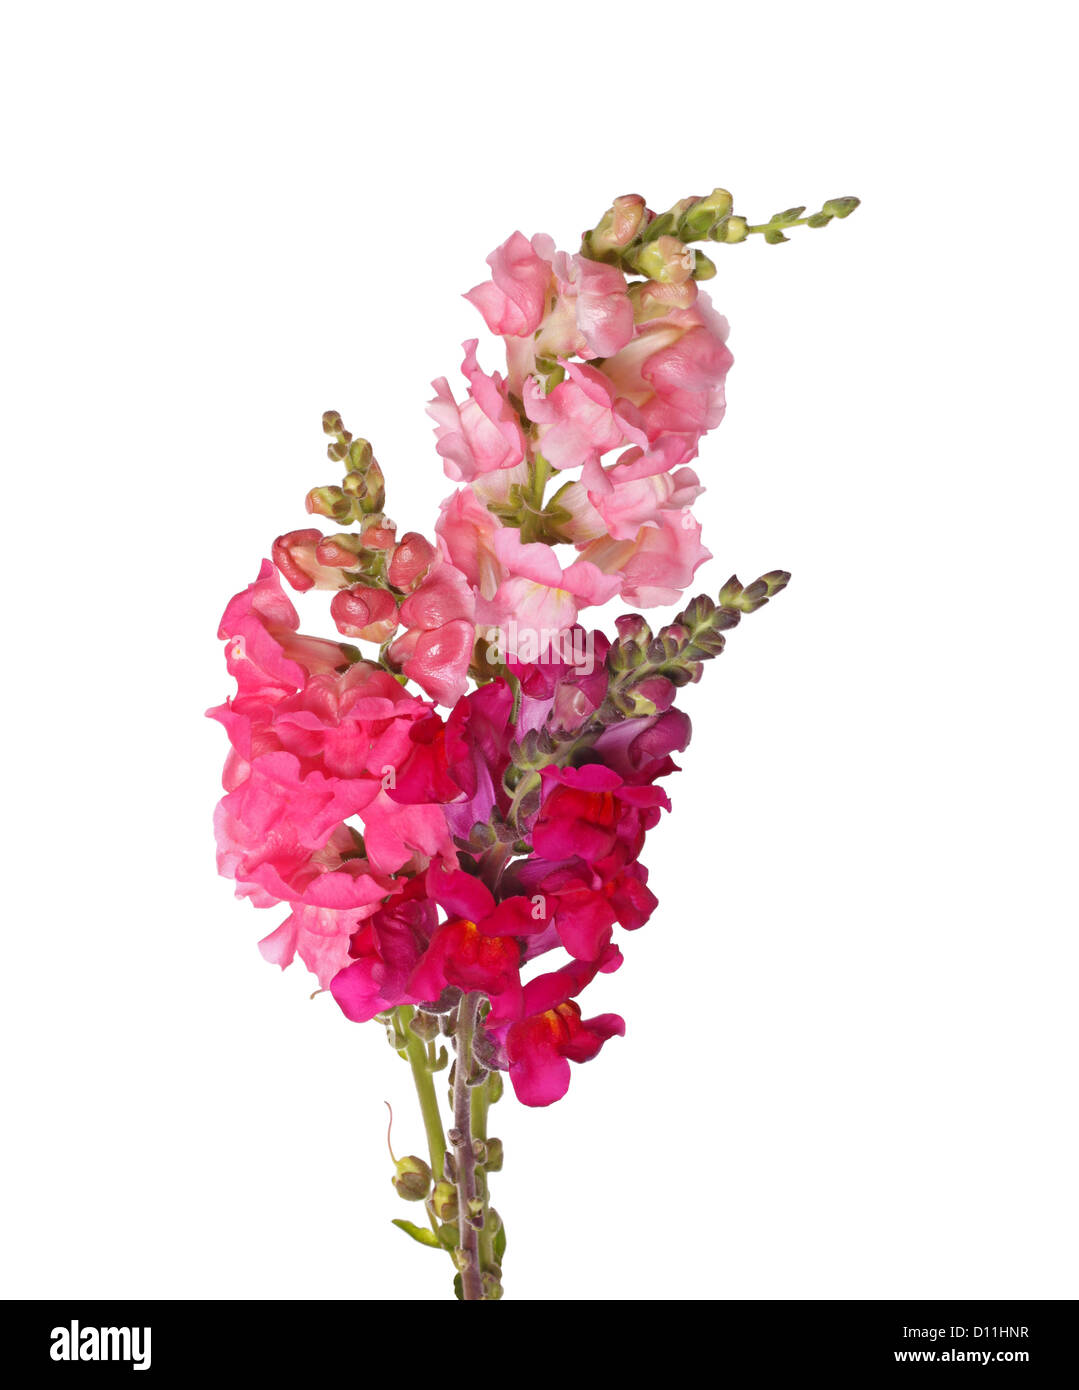 Più steli di rosa, rosso, viola e fiori di colore giallo di bocche di leone (Antirrhinum majus) isolati contro uno sfondo bianco Foto Stock